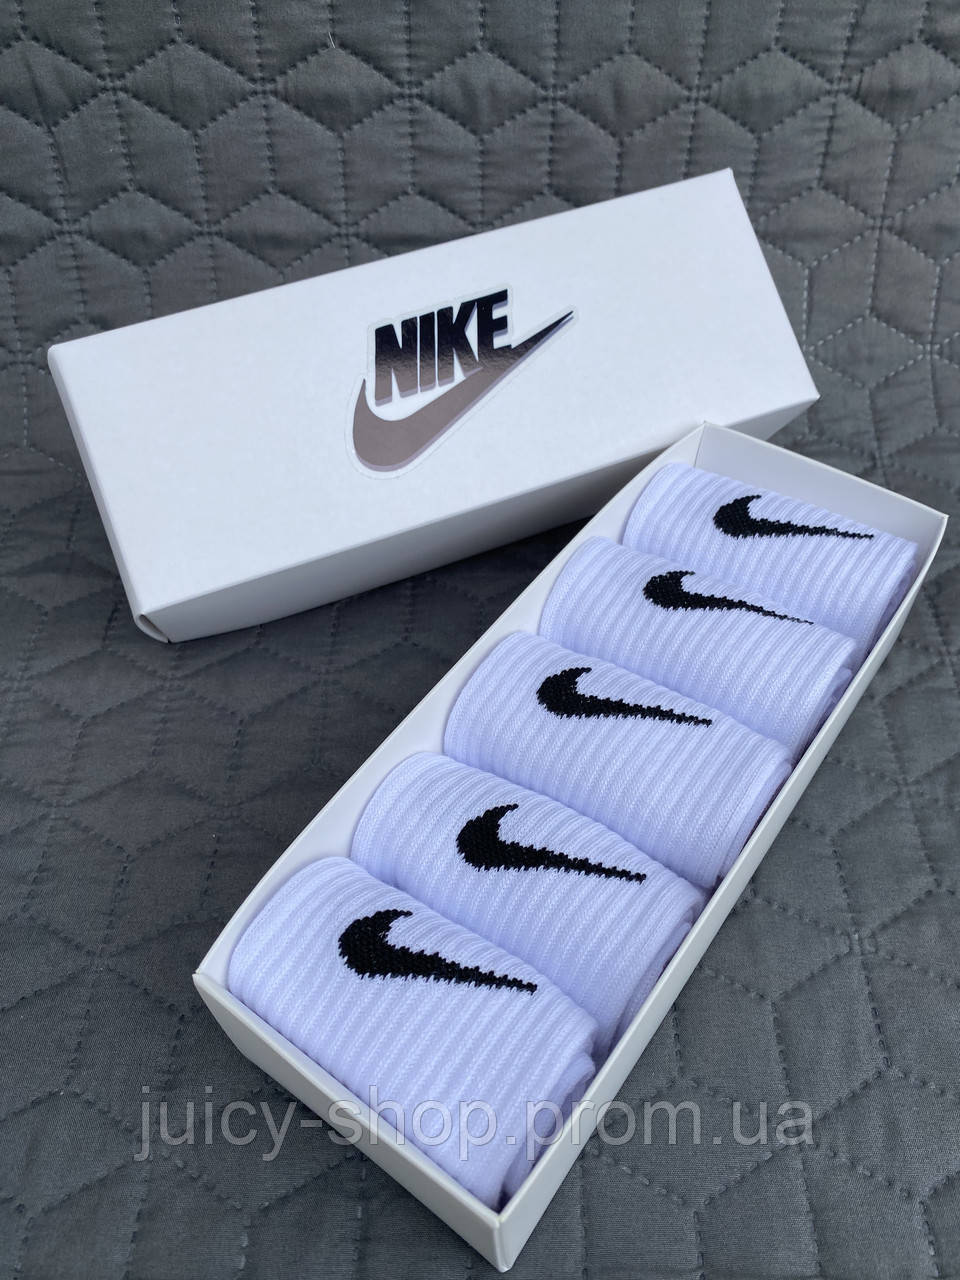 Високі чоловічі шкарпетки/Шкарпетки Nike/найк — Білі — розміри 41 — 46 (найк) Подарунковий набір у коробці 5 пар